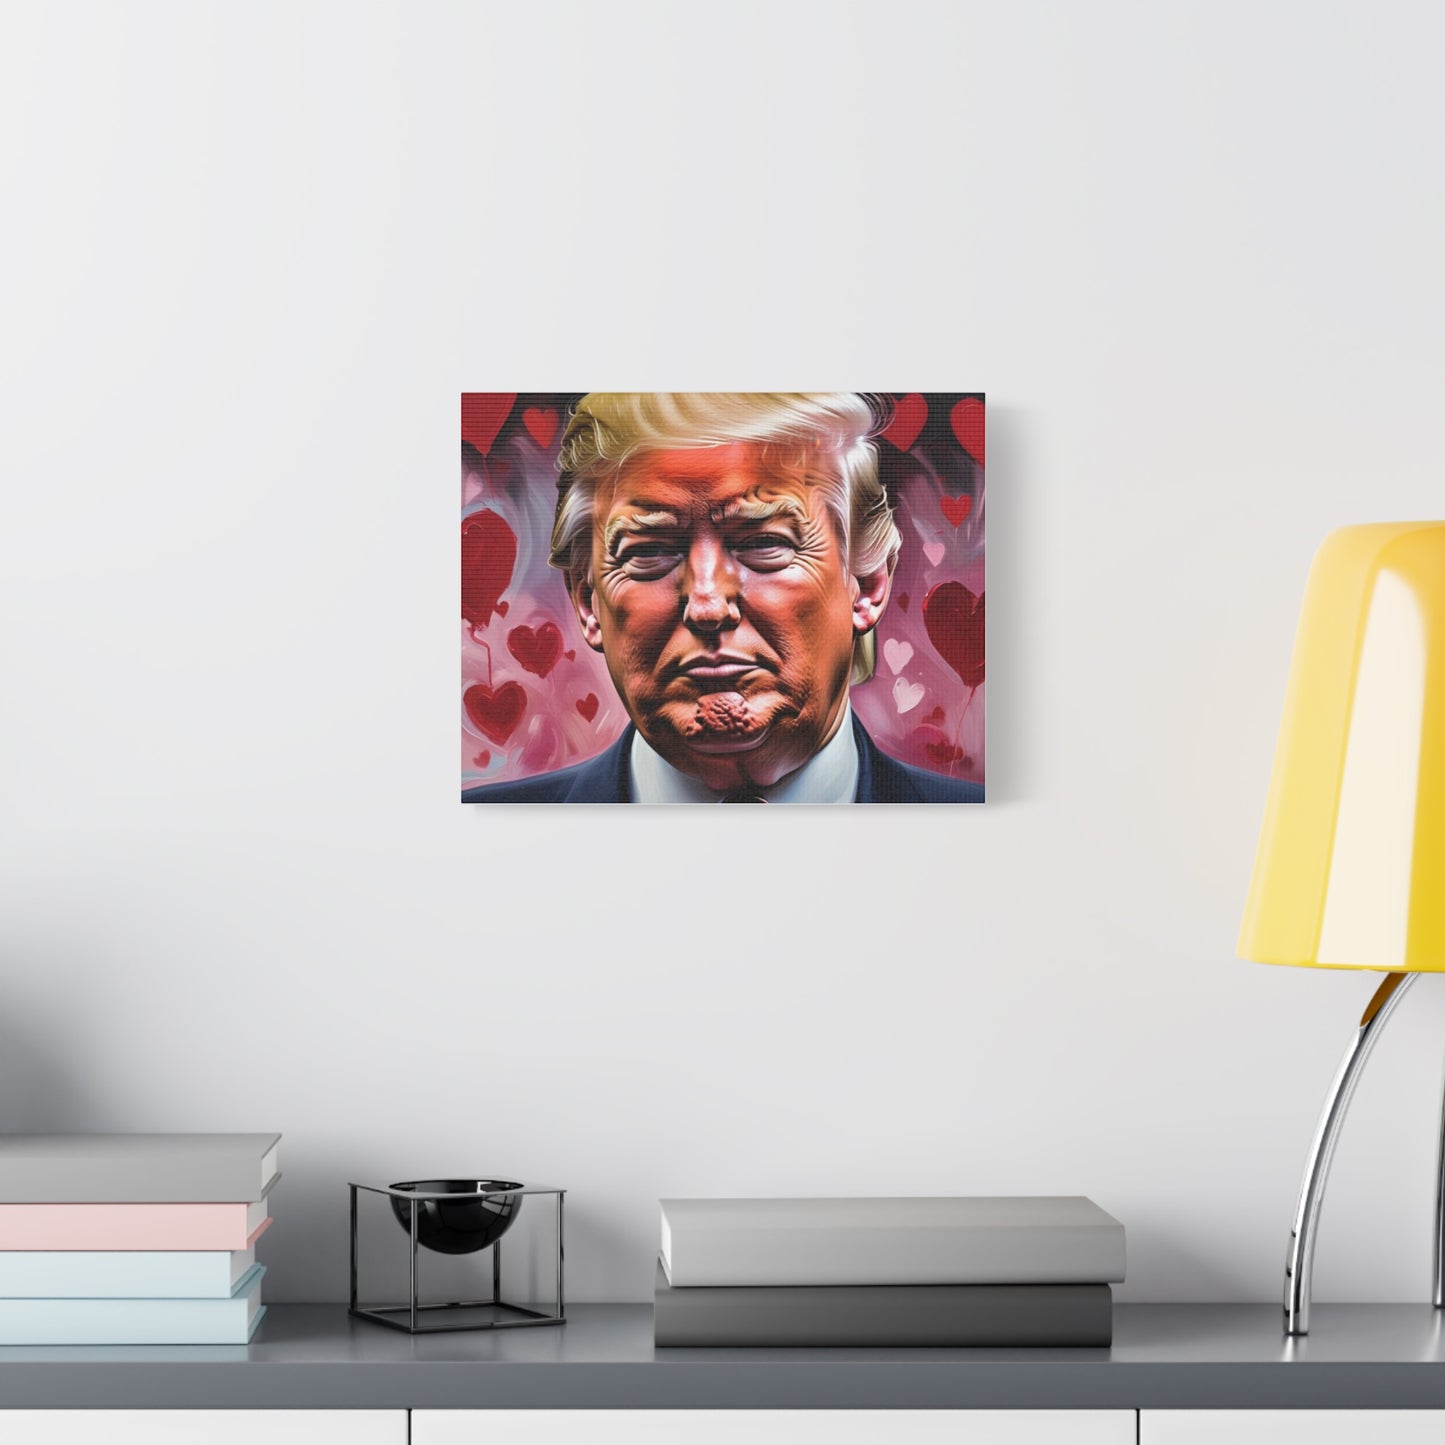 Nachdruck von Donald Trump mit Herzen *Gemälde von Bella K. Matte Leinwand, gespannt, 1,25"